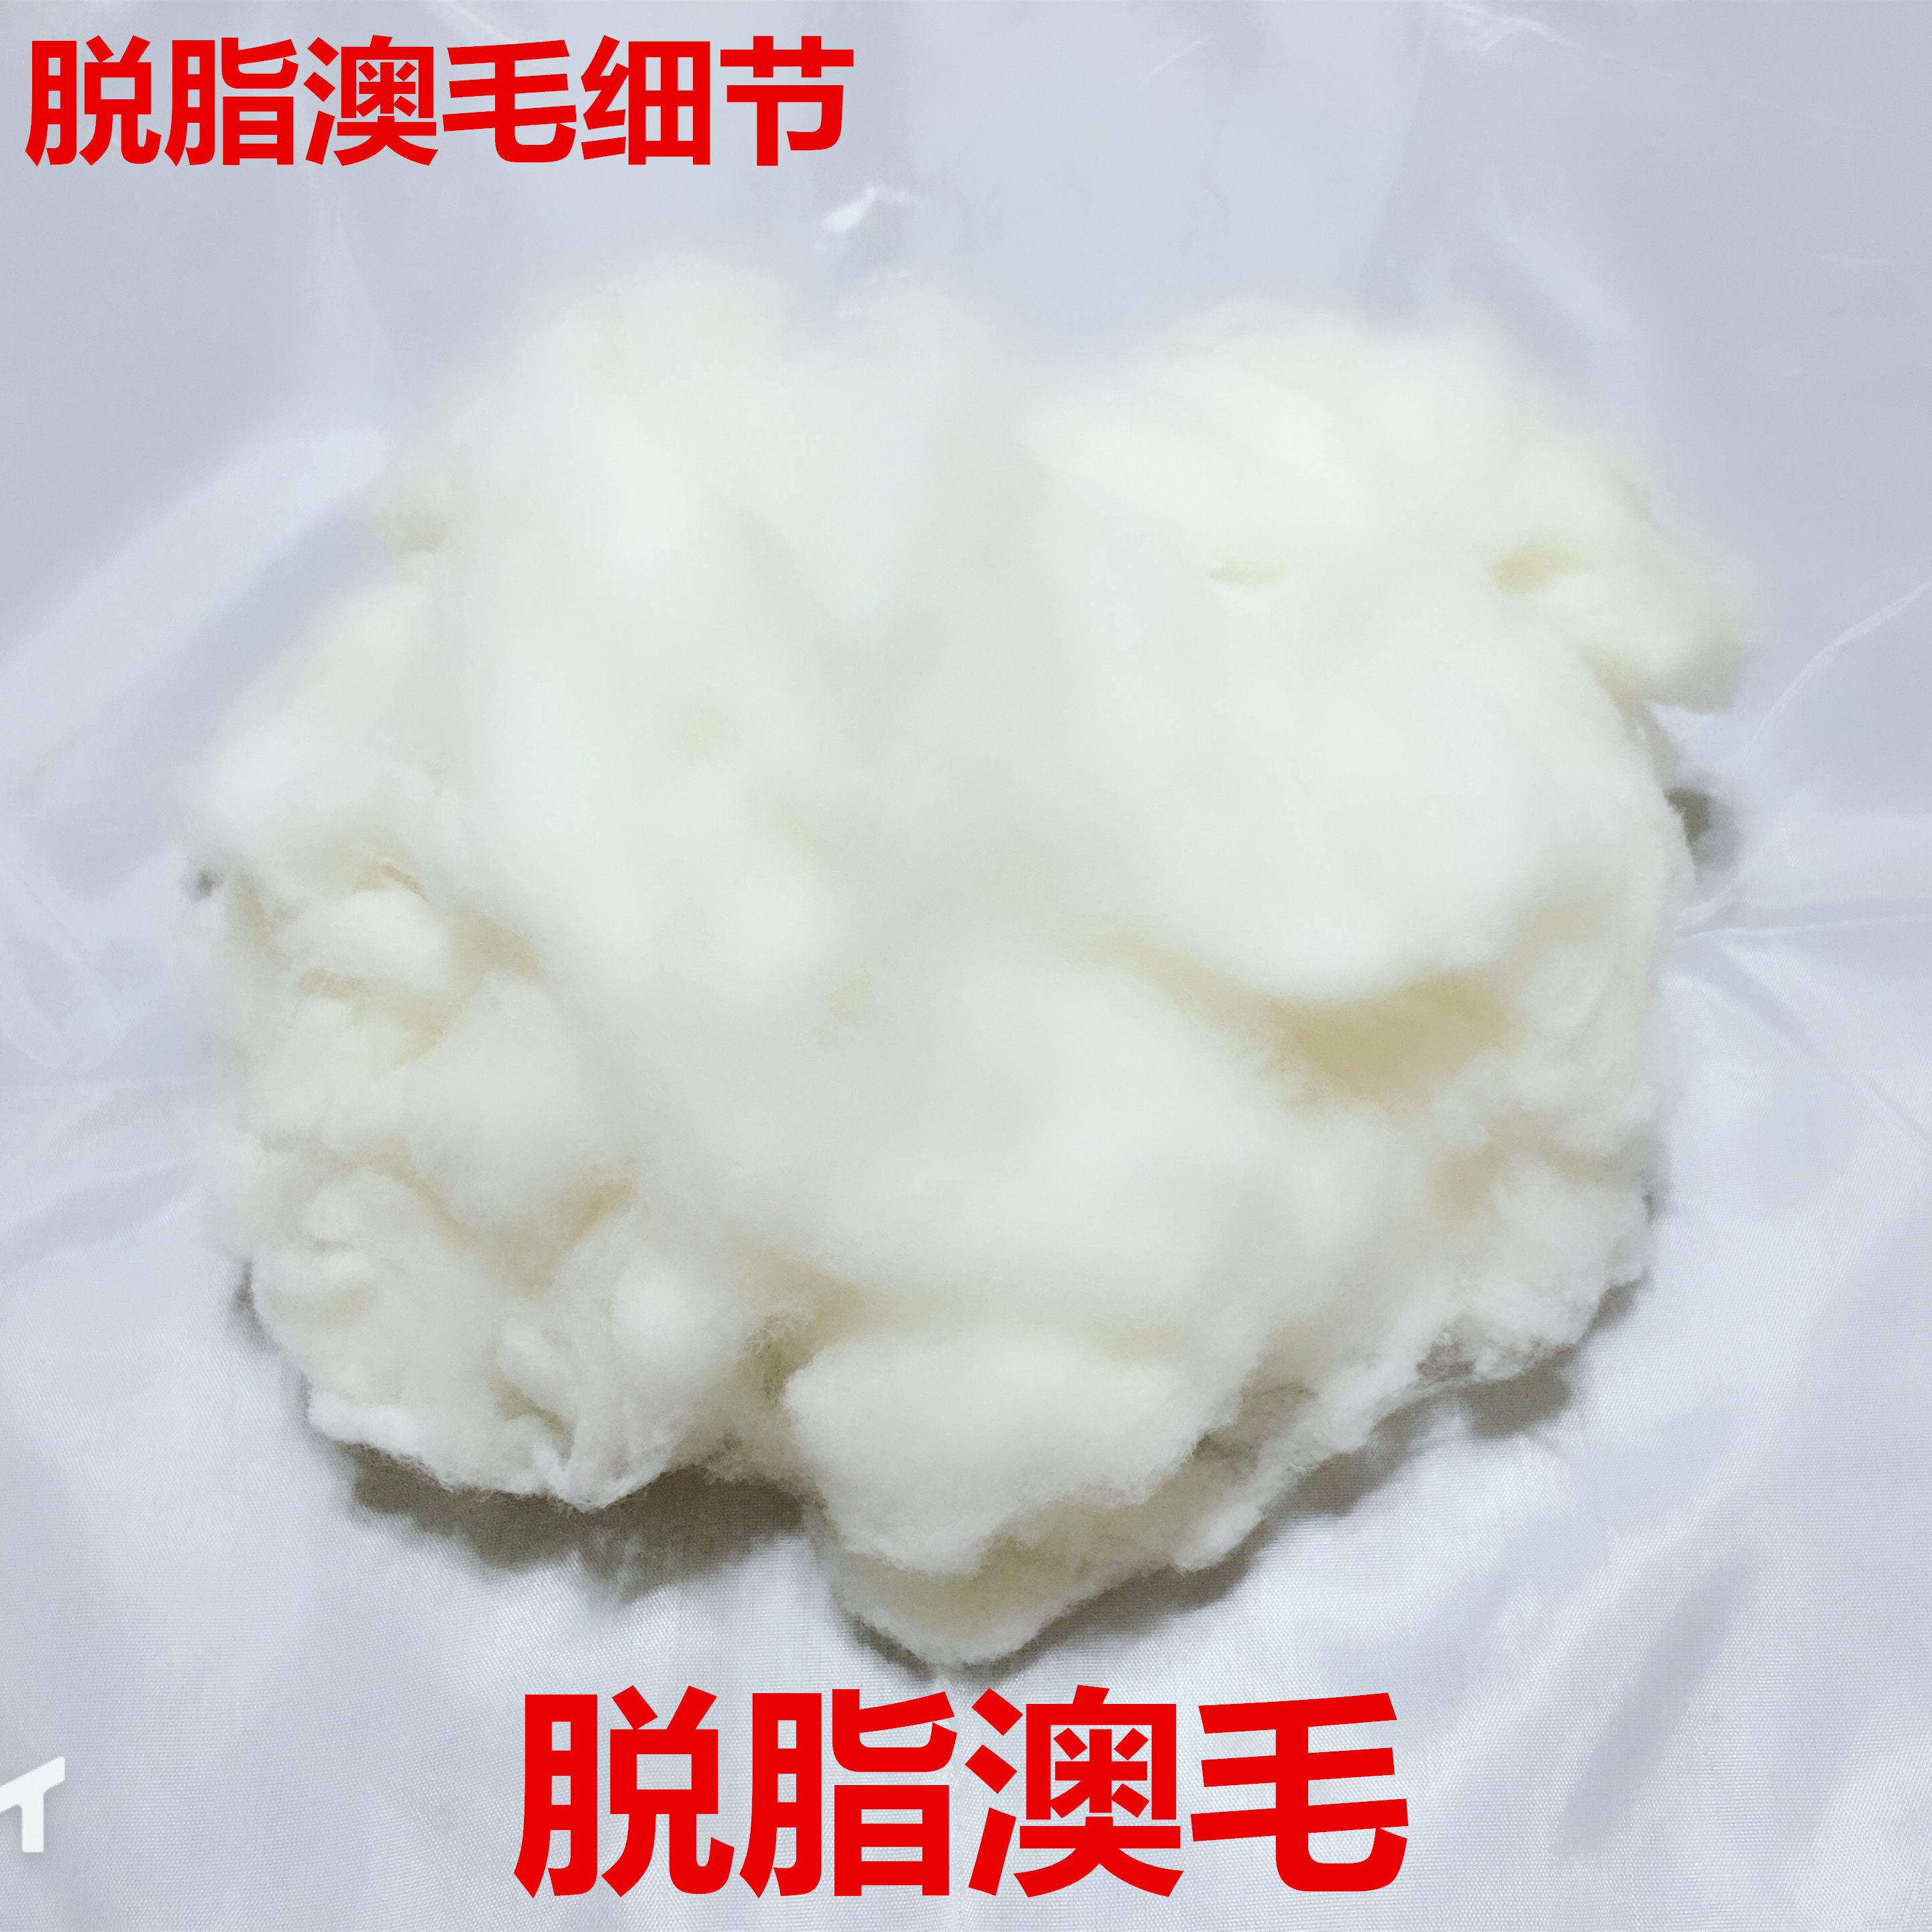 绵羊毛 被服填充物毛毡专用 可用于纺纱 厂家直销羊毛 羊毛原料水洗羊毛1